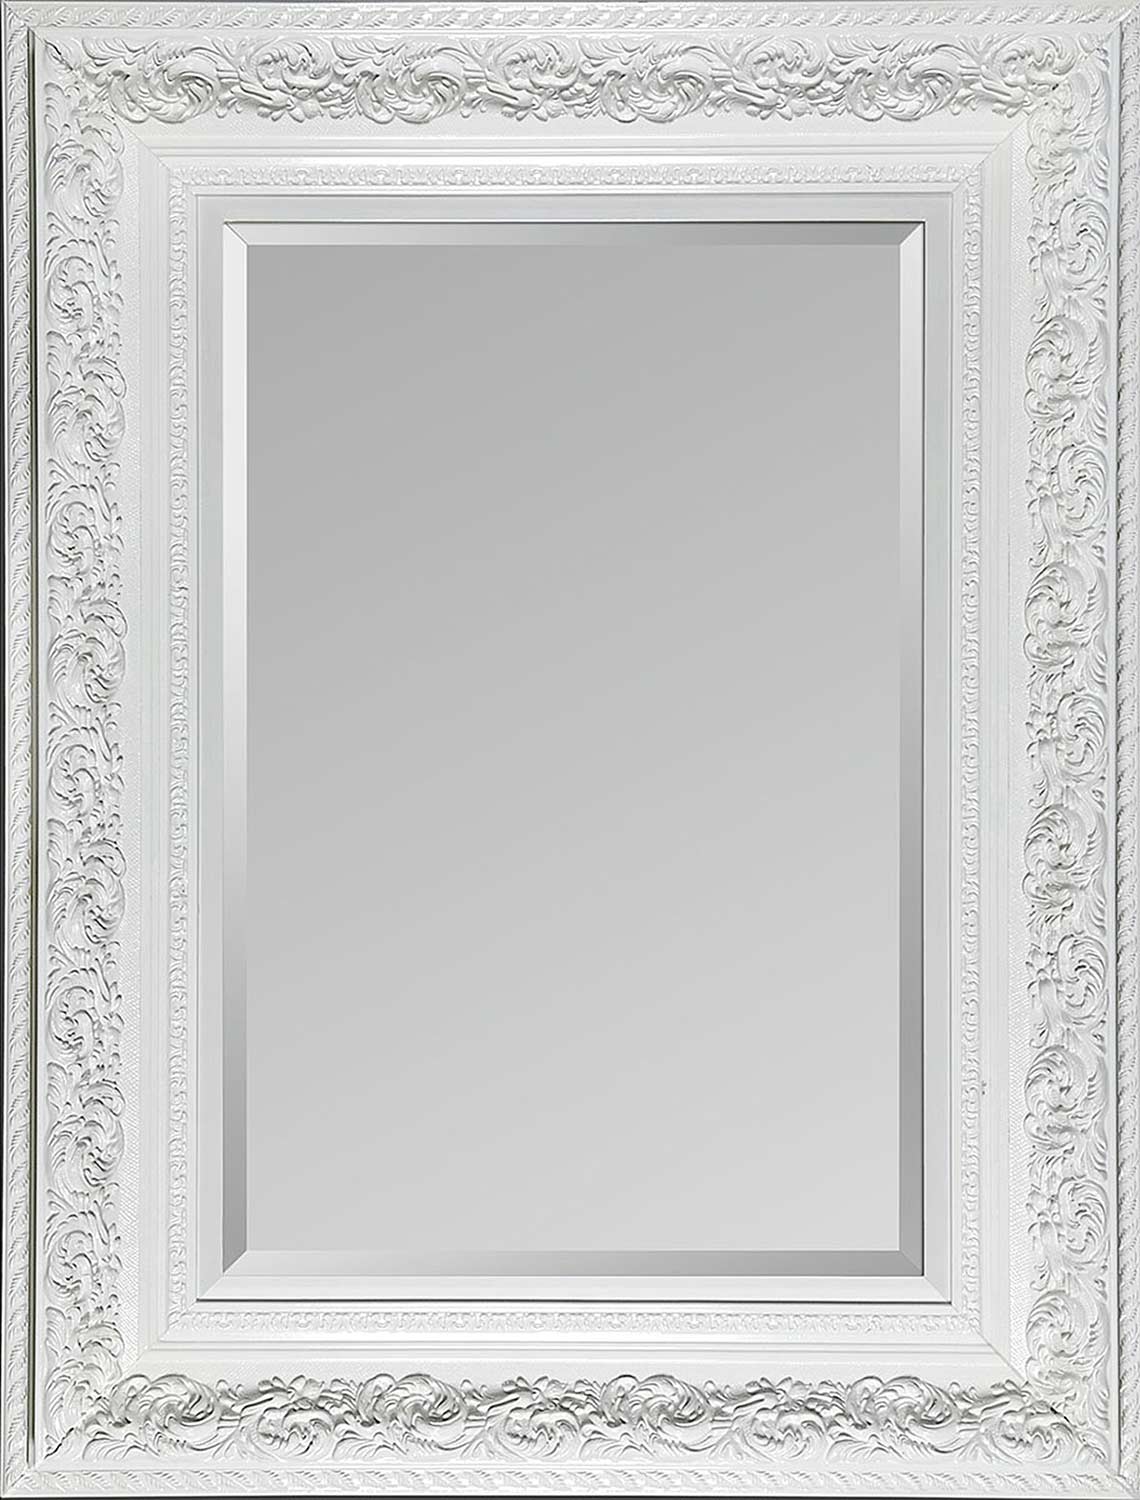 Ren-Wil MT864 Vertical Mirror - High-Gloss Lacquer